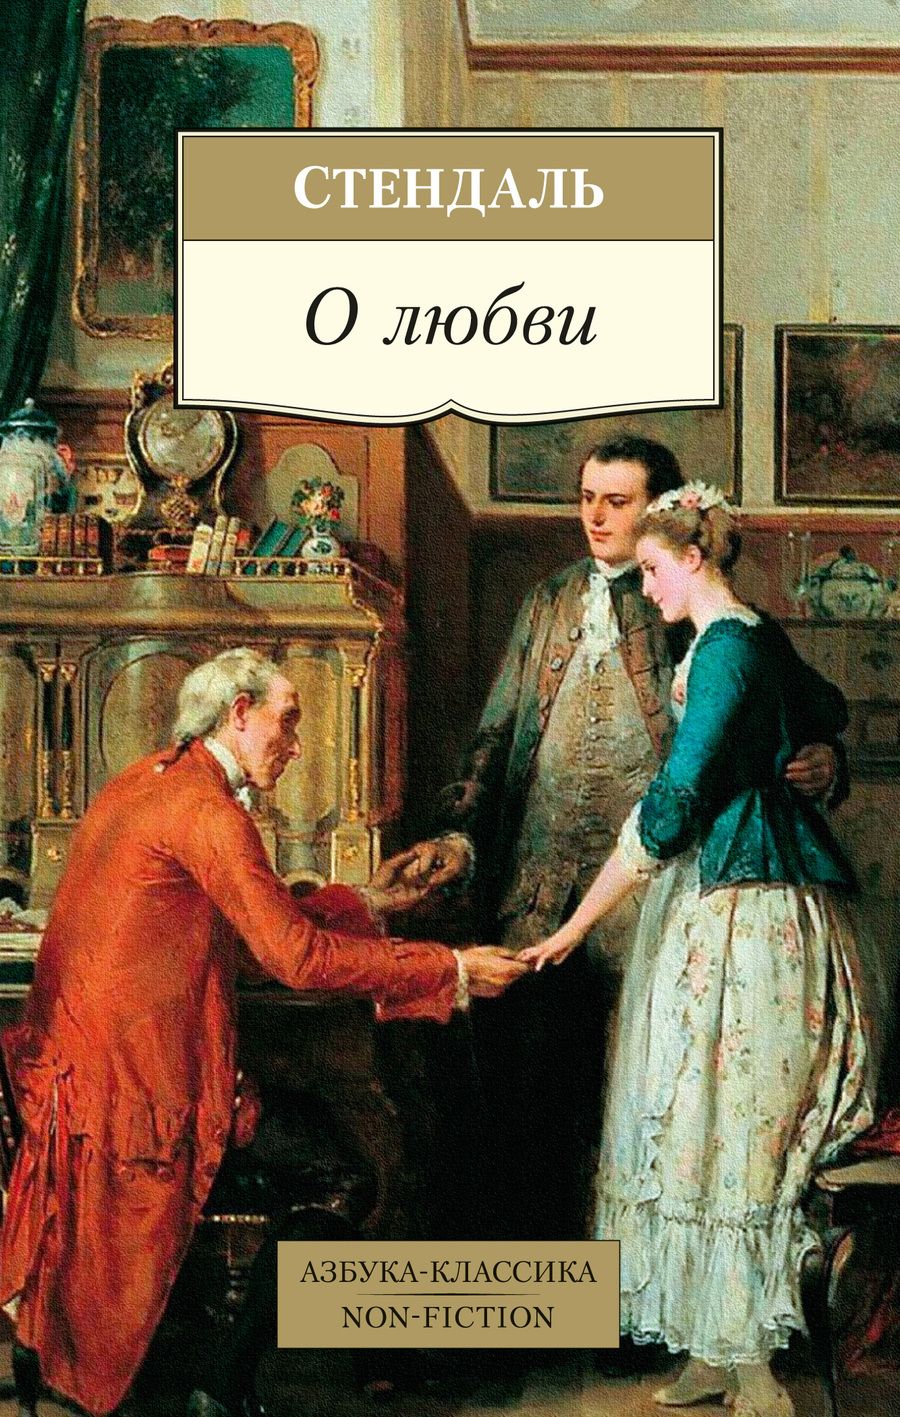 Обложка книги "Стендаль: О любви"